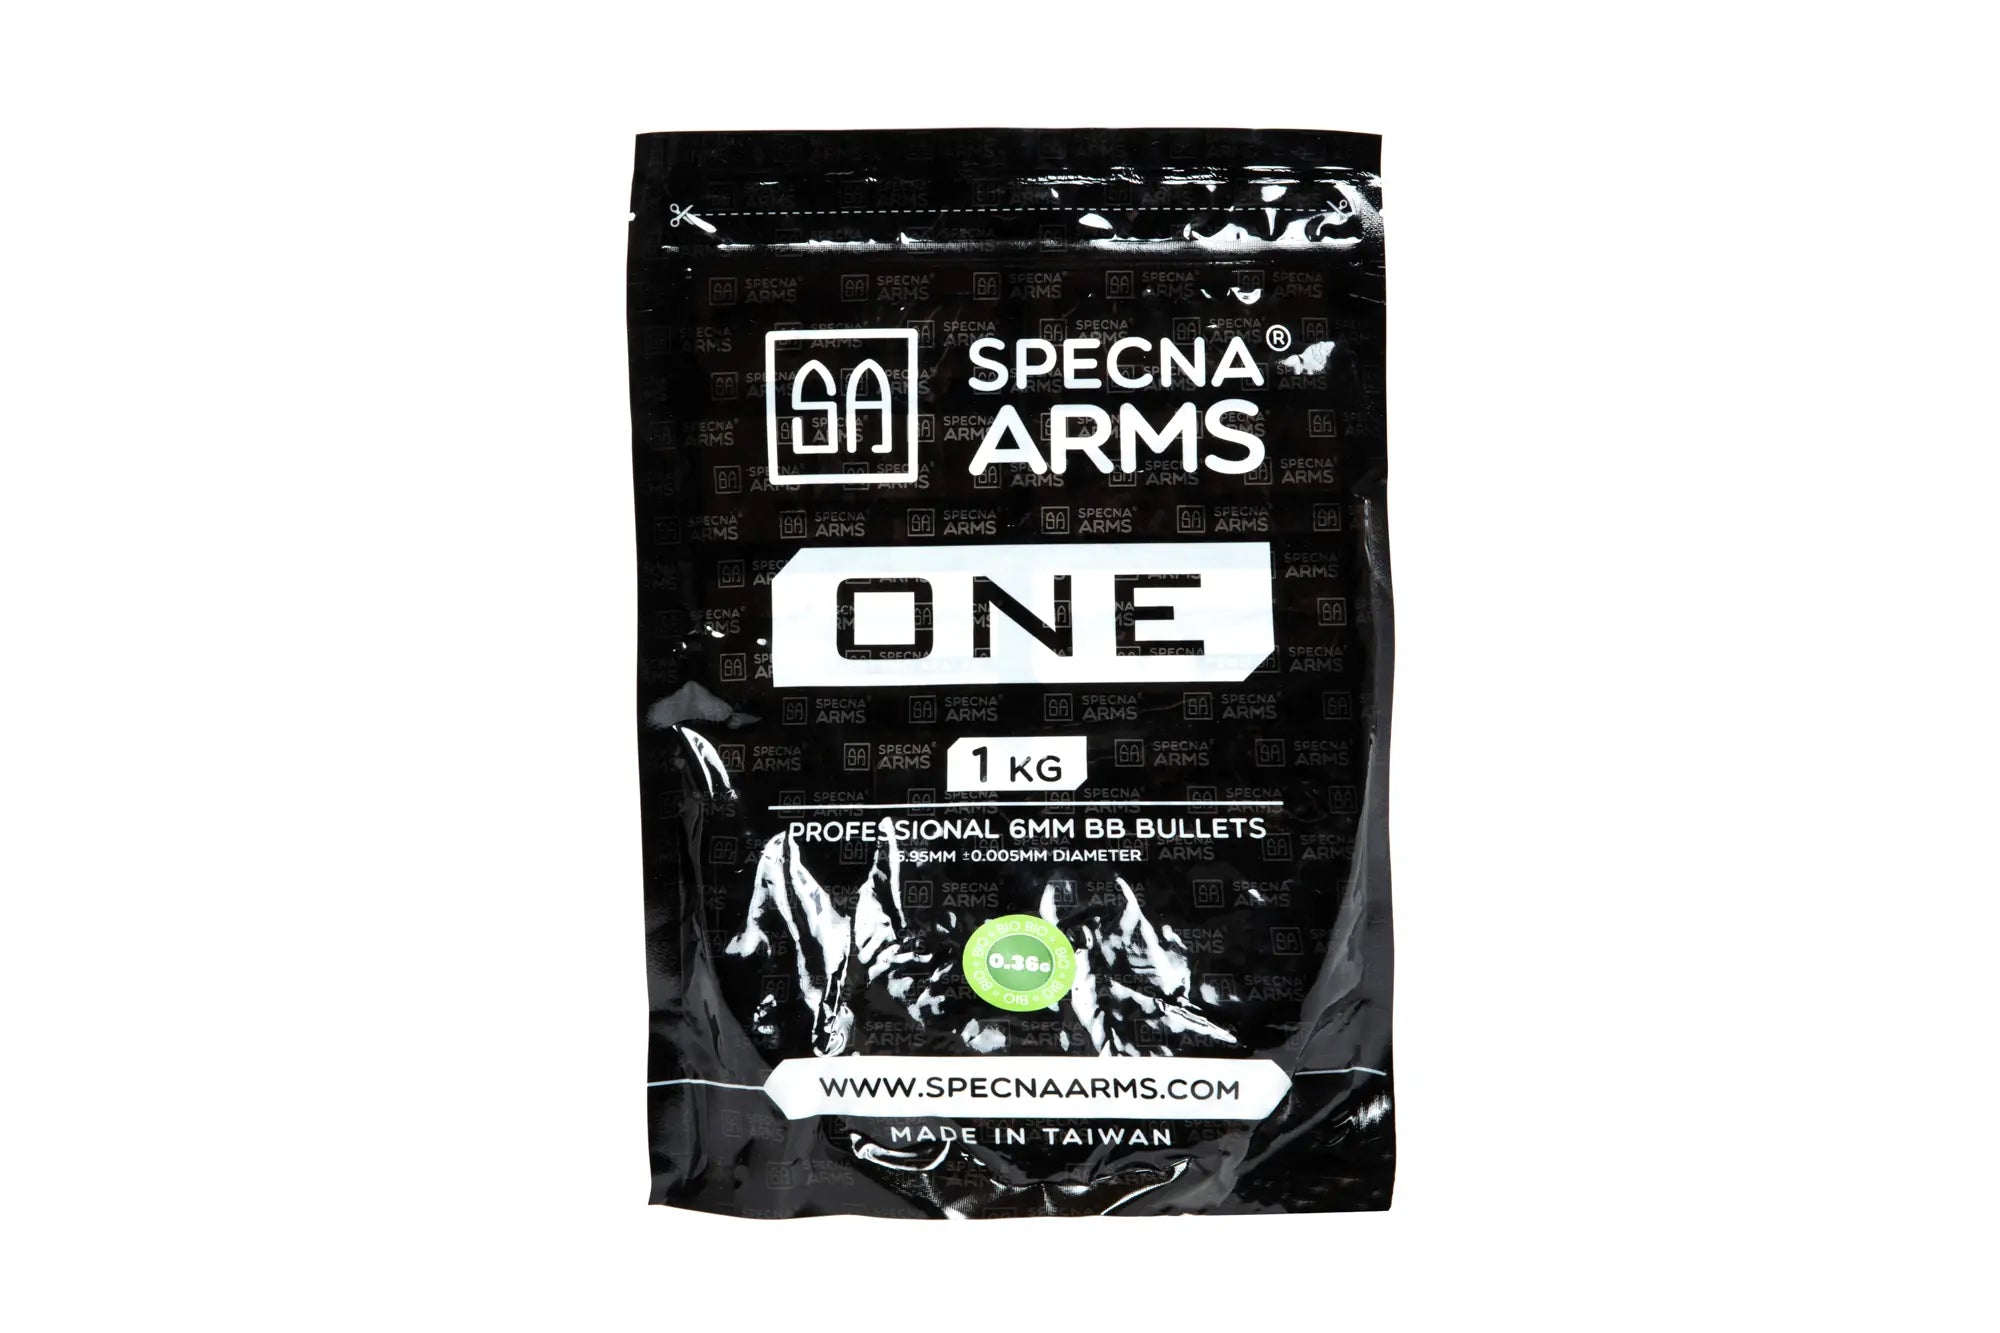 Specna Arms One Bio 0.36 1 Kg White